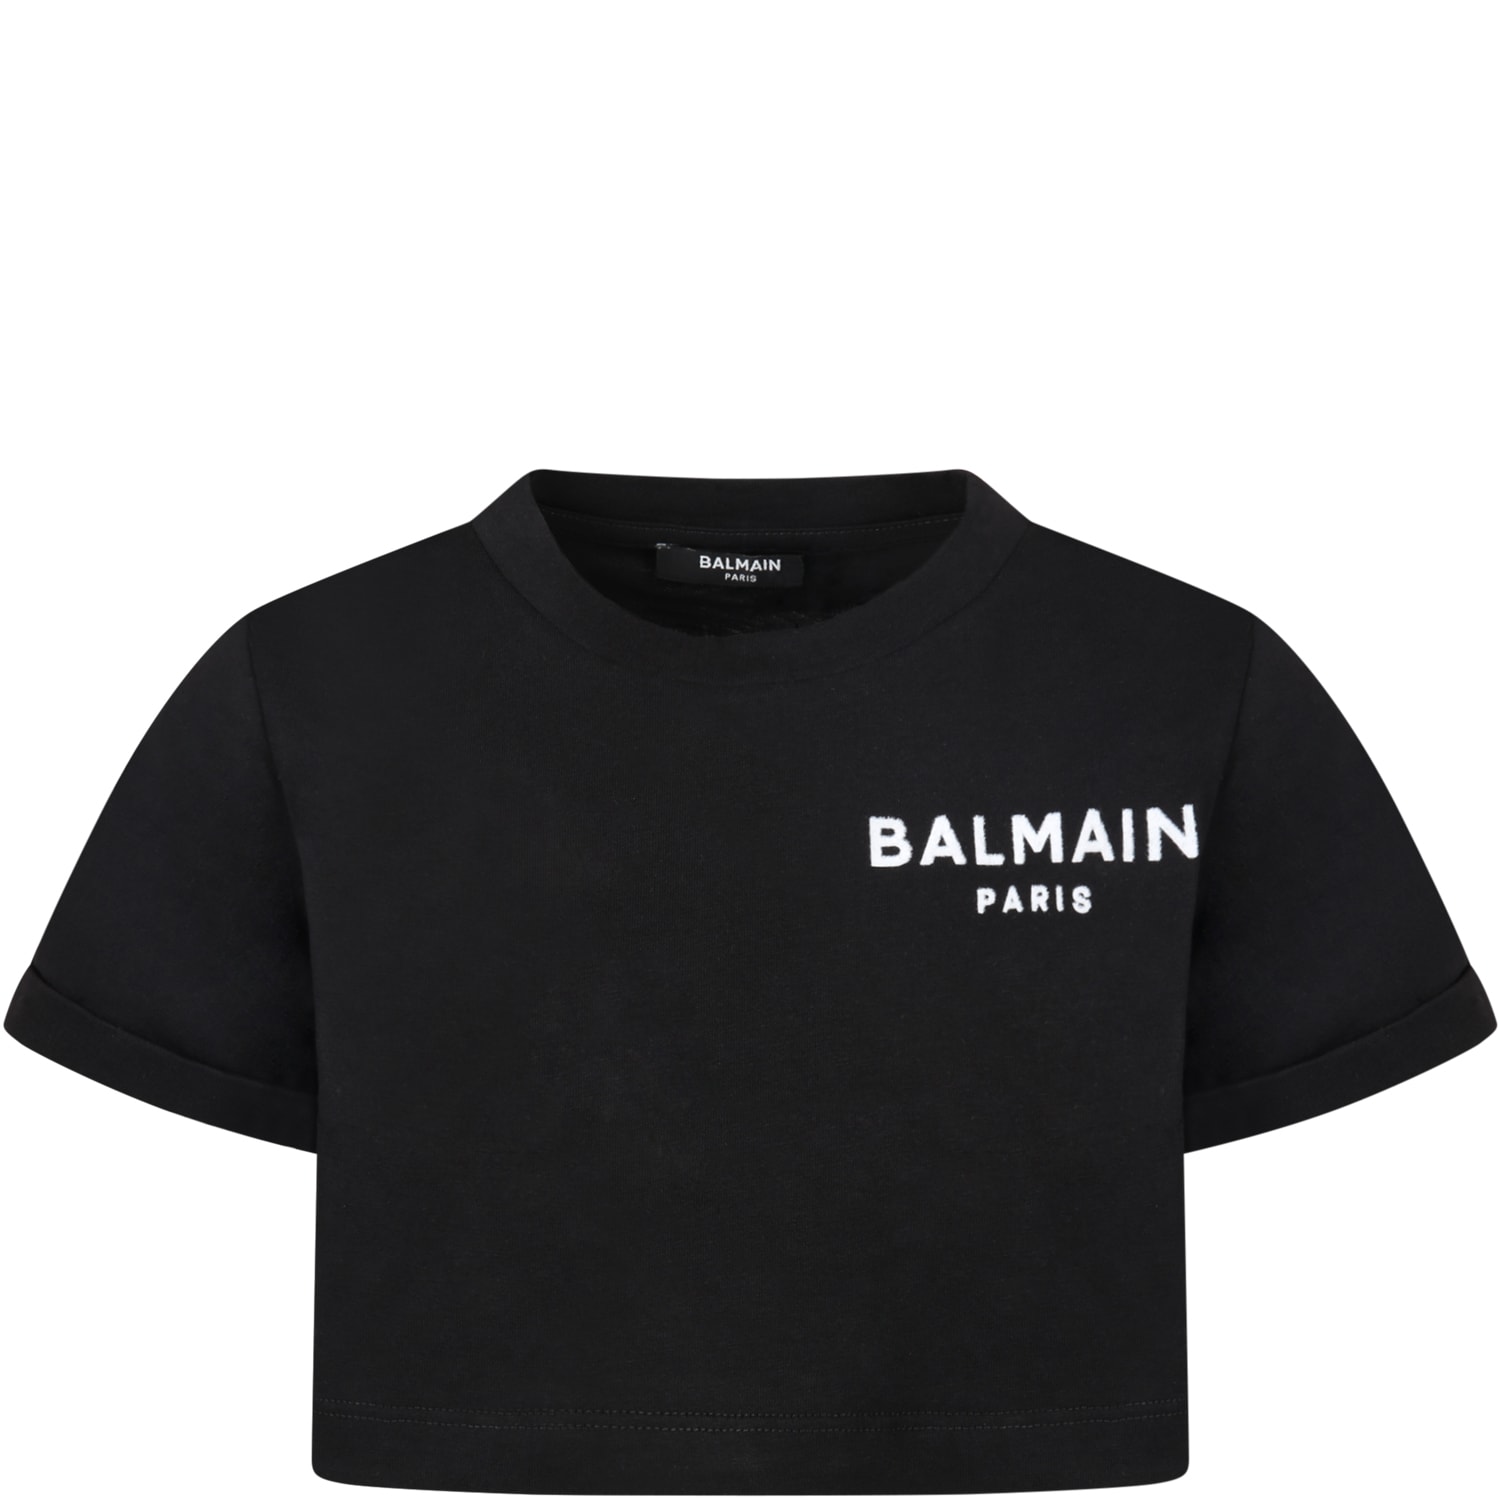 Balmain Black T-shirt For Girl With White Velvet Logo